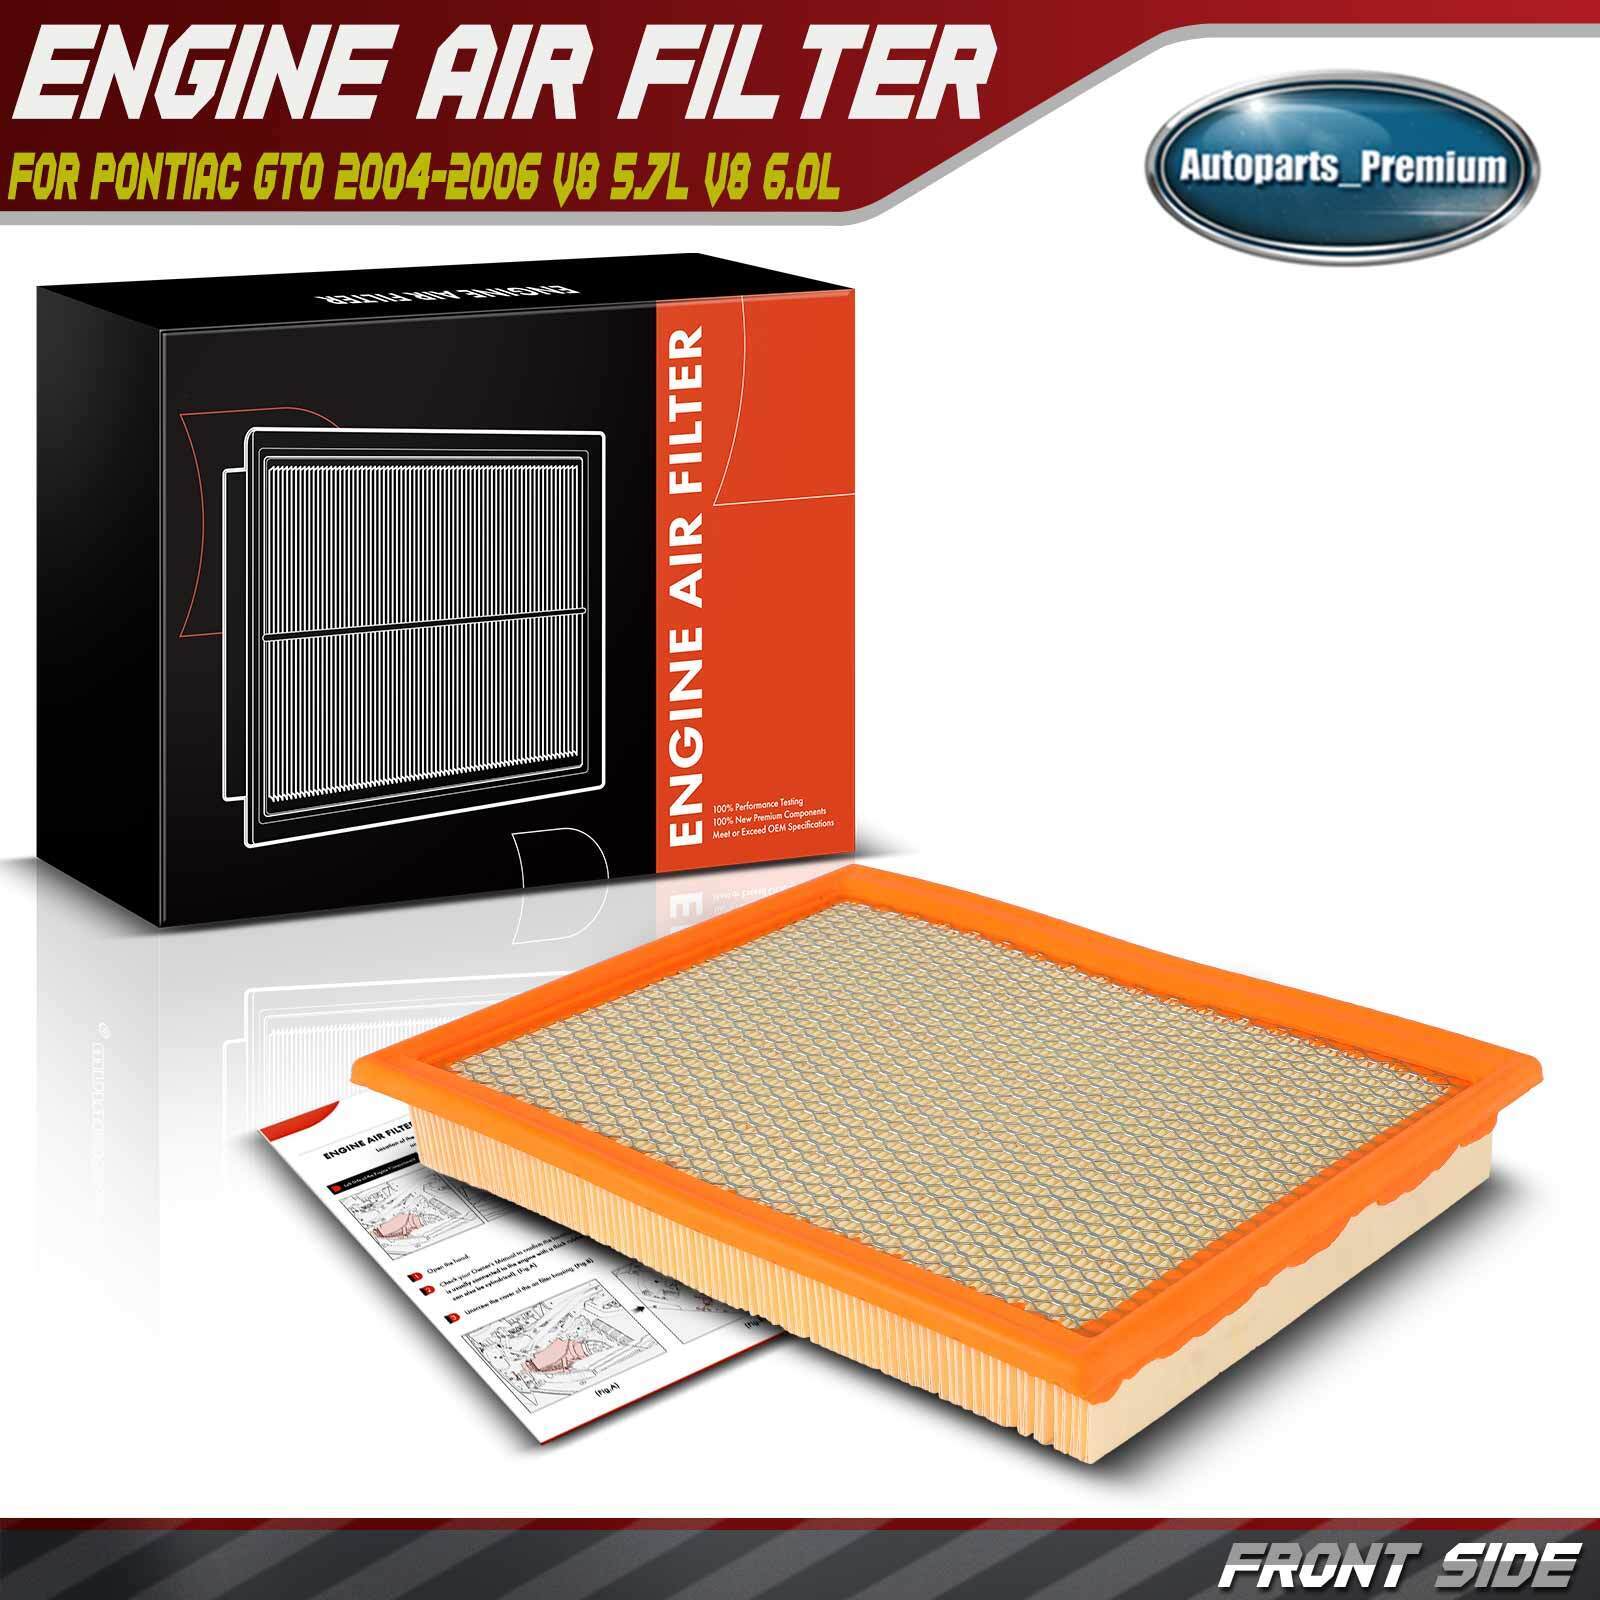 New Engine Air Filter for Pontiac GTO 2004 2005-2006 V8 5.7L V8 6.0L 92068161